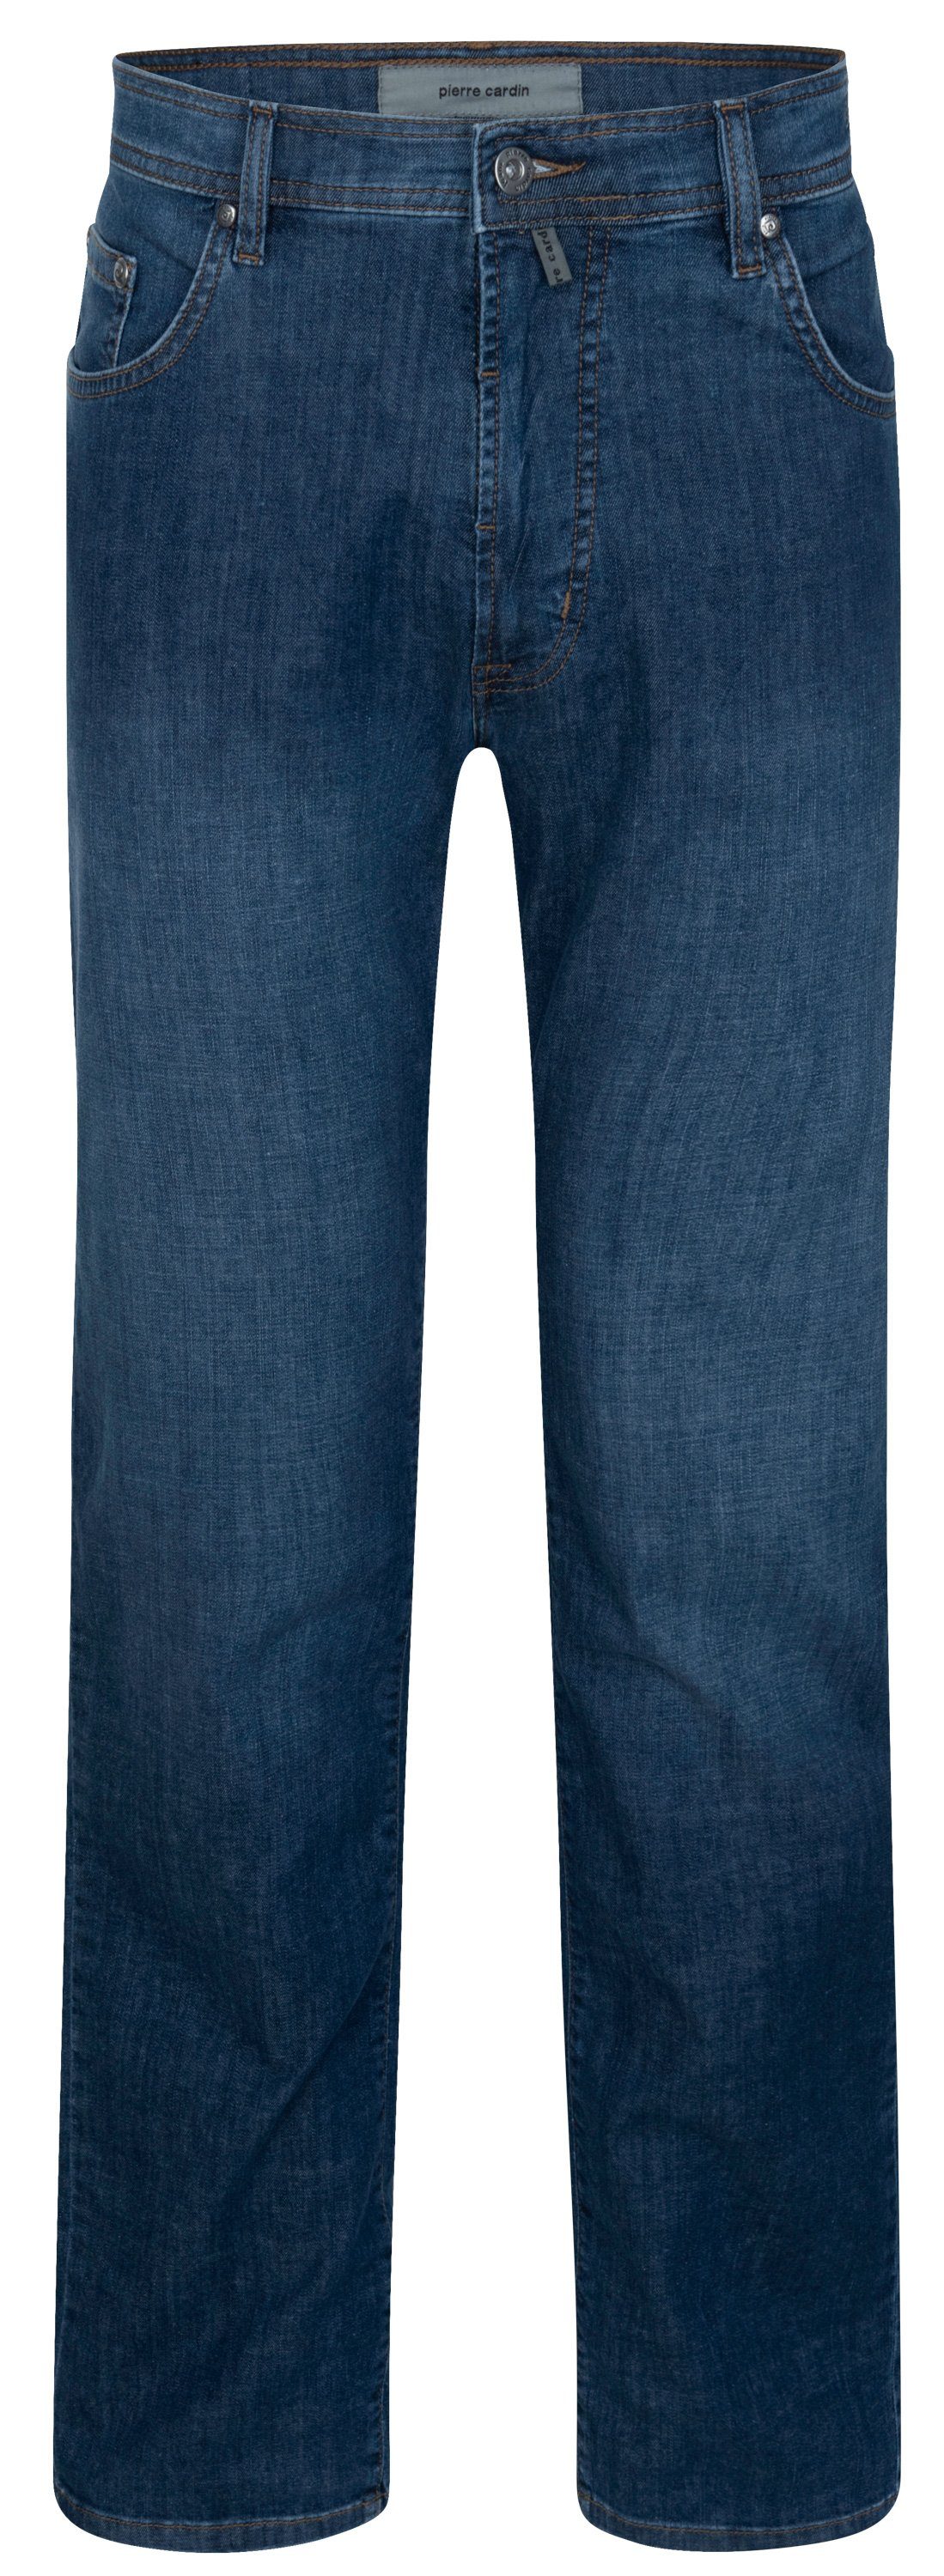 Pierre Cardin 5-Pocket-Jeans PIERRE CARDIN DIJON blue used 32310 7731.6822 - Air Touch